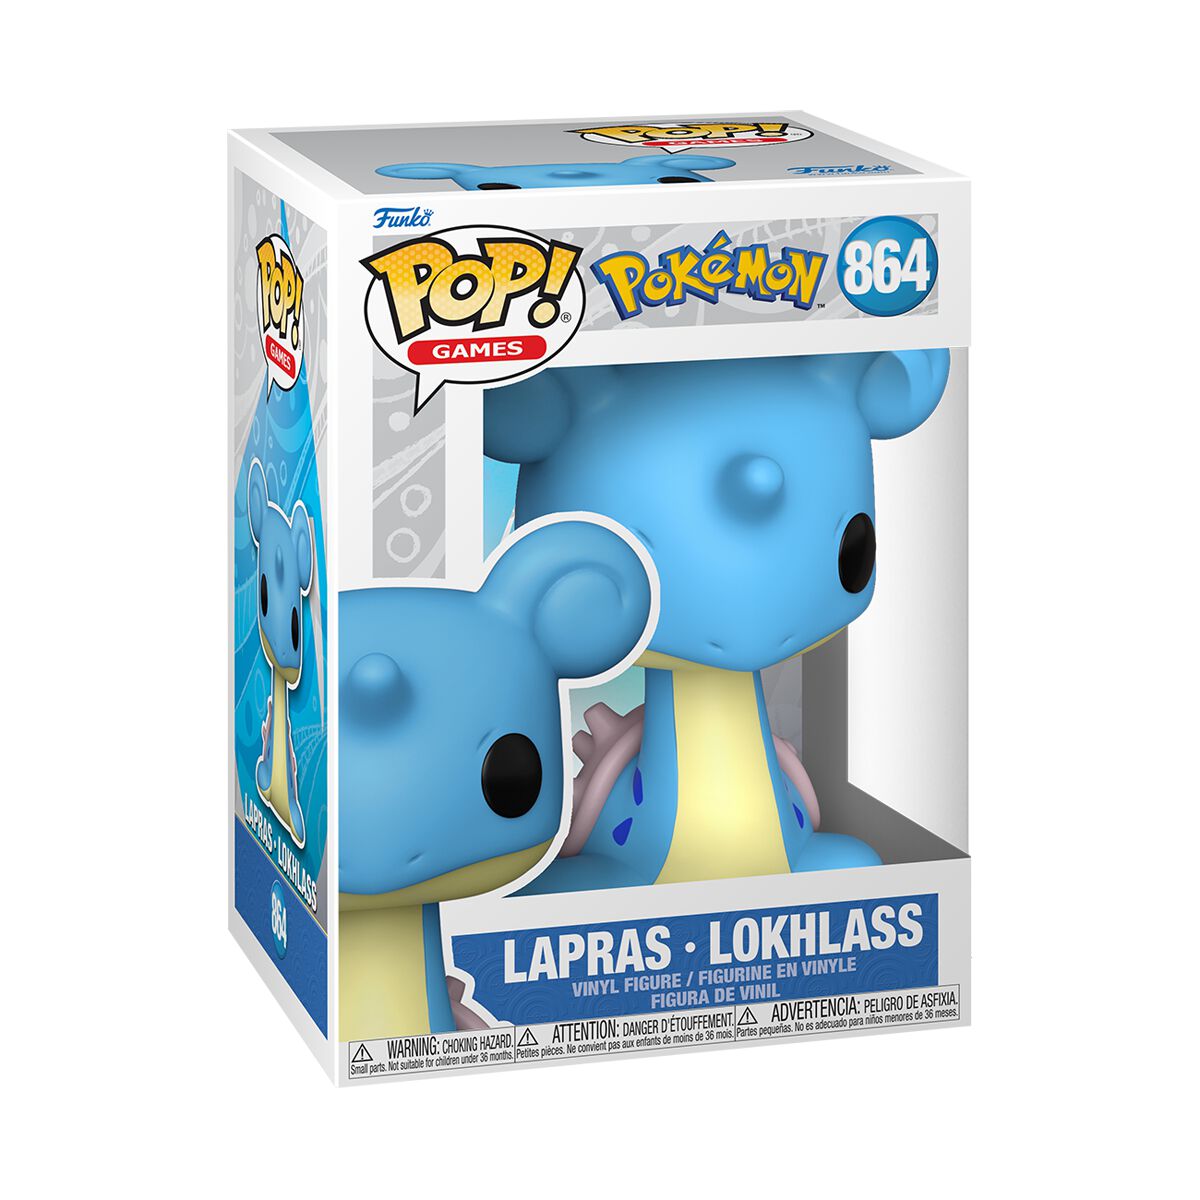 Lapras vinyl figurine no. 864, Pokémon Funko Pop!